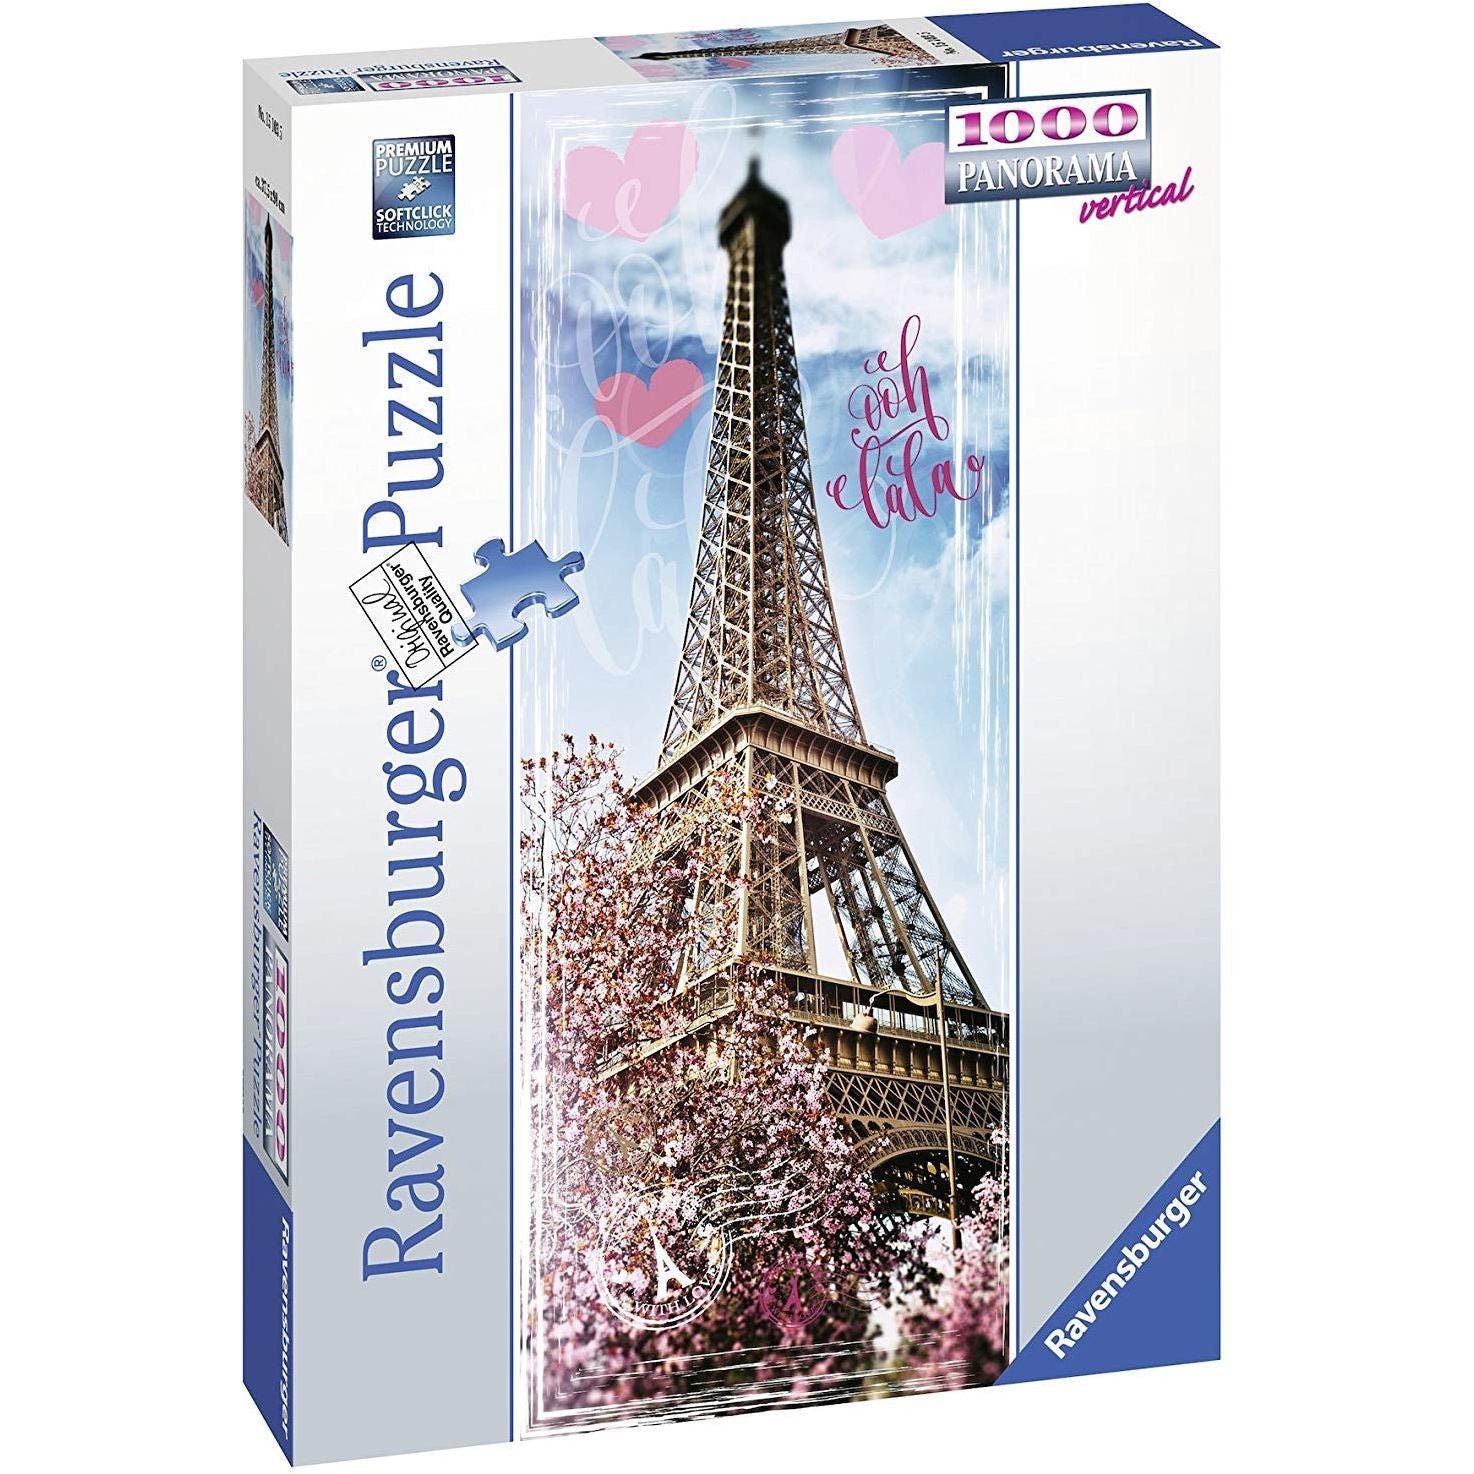 Puzzle 1000pz Ravensburger Panorama Vertical - Ooh Lala Parigi  Dimensione: 50x70cm circa